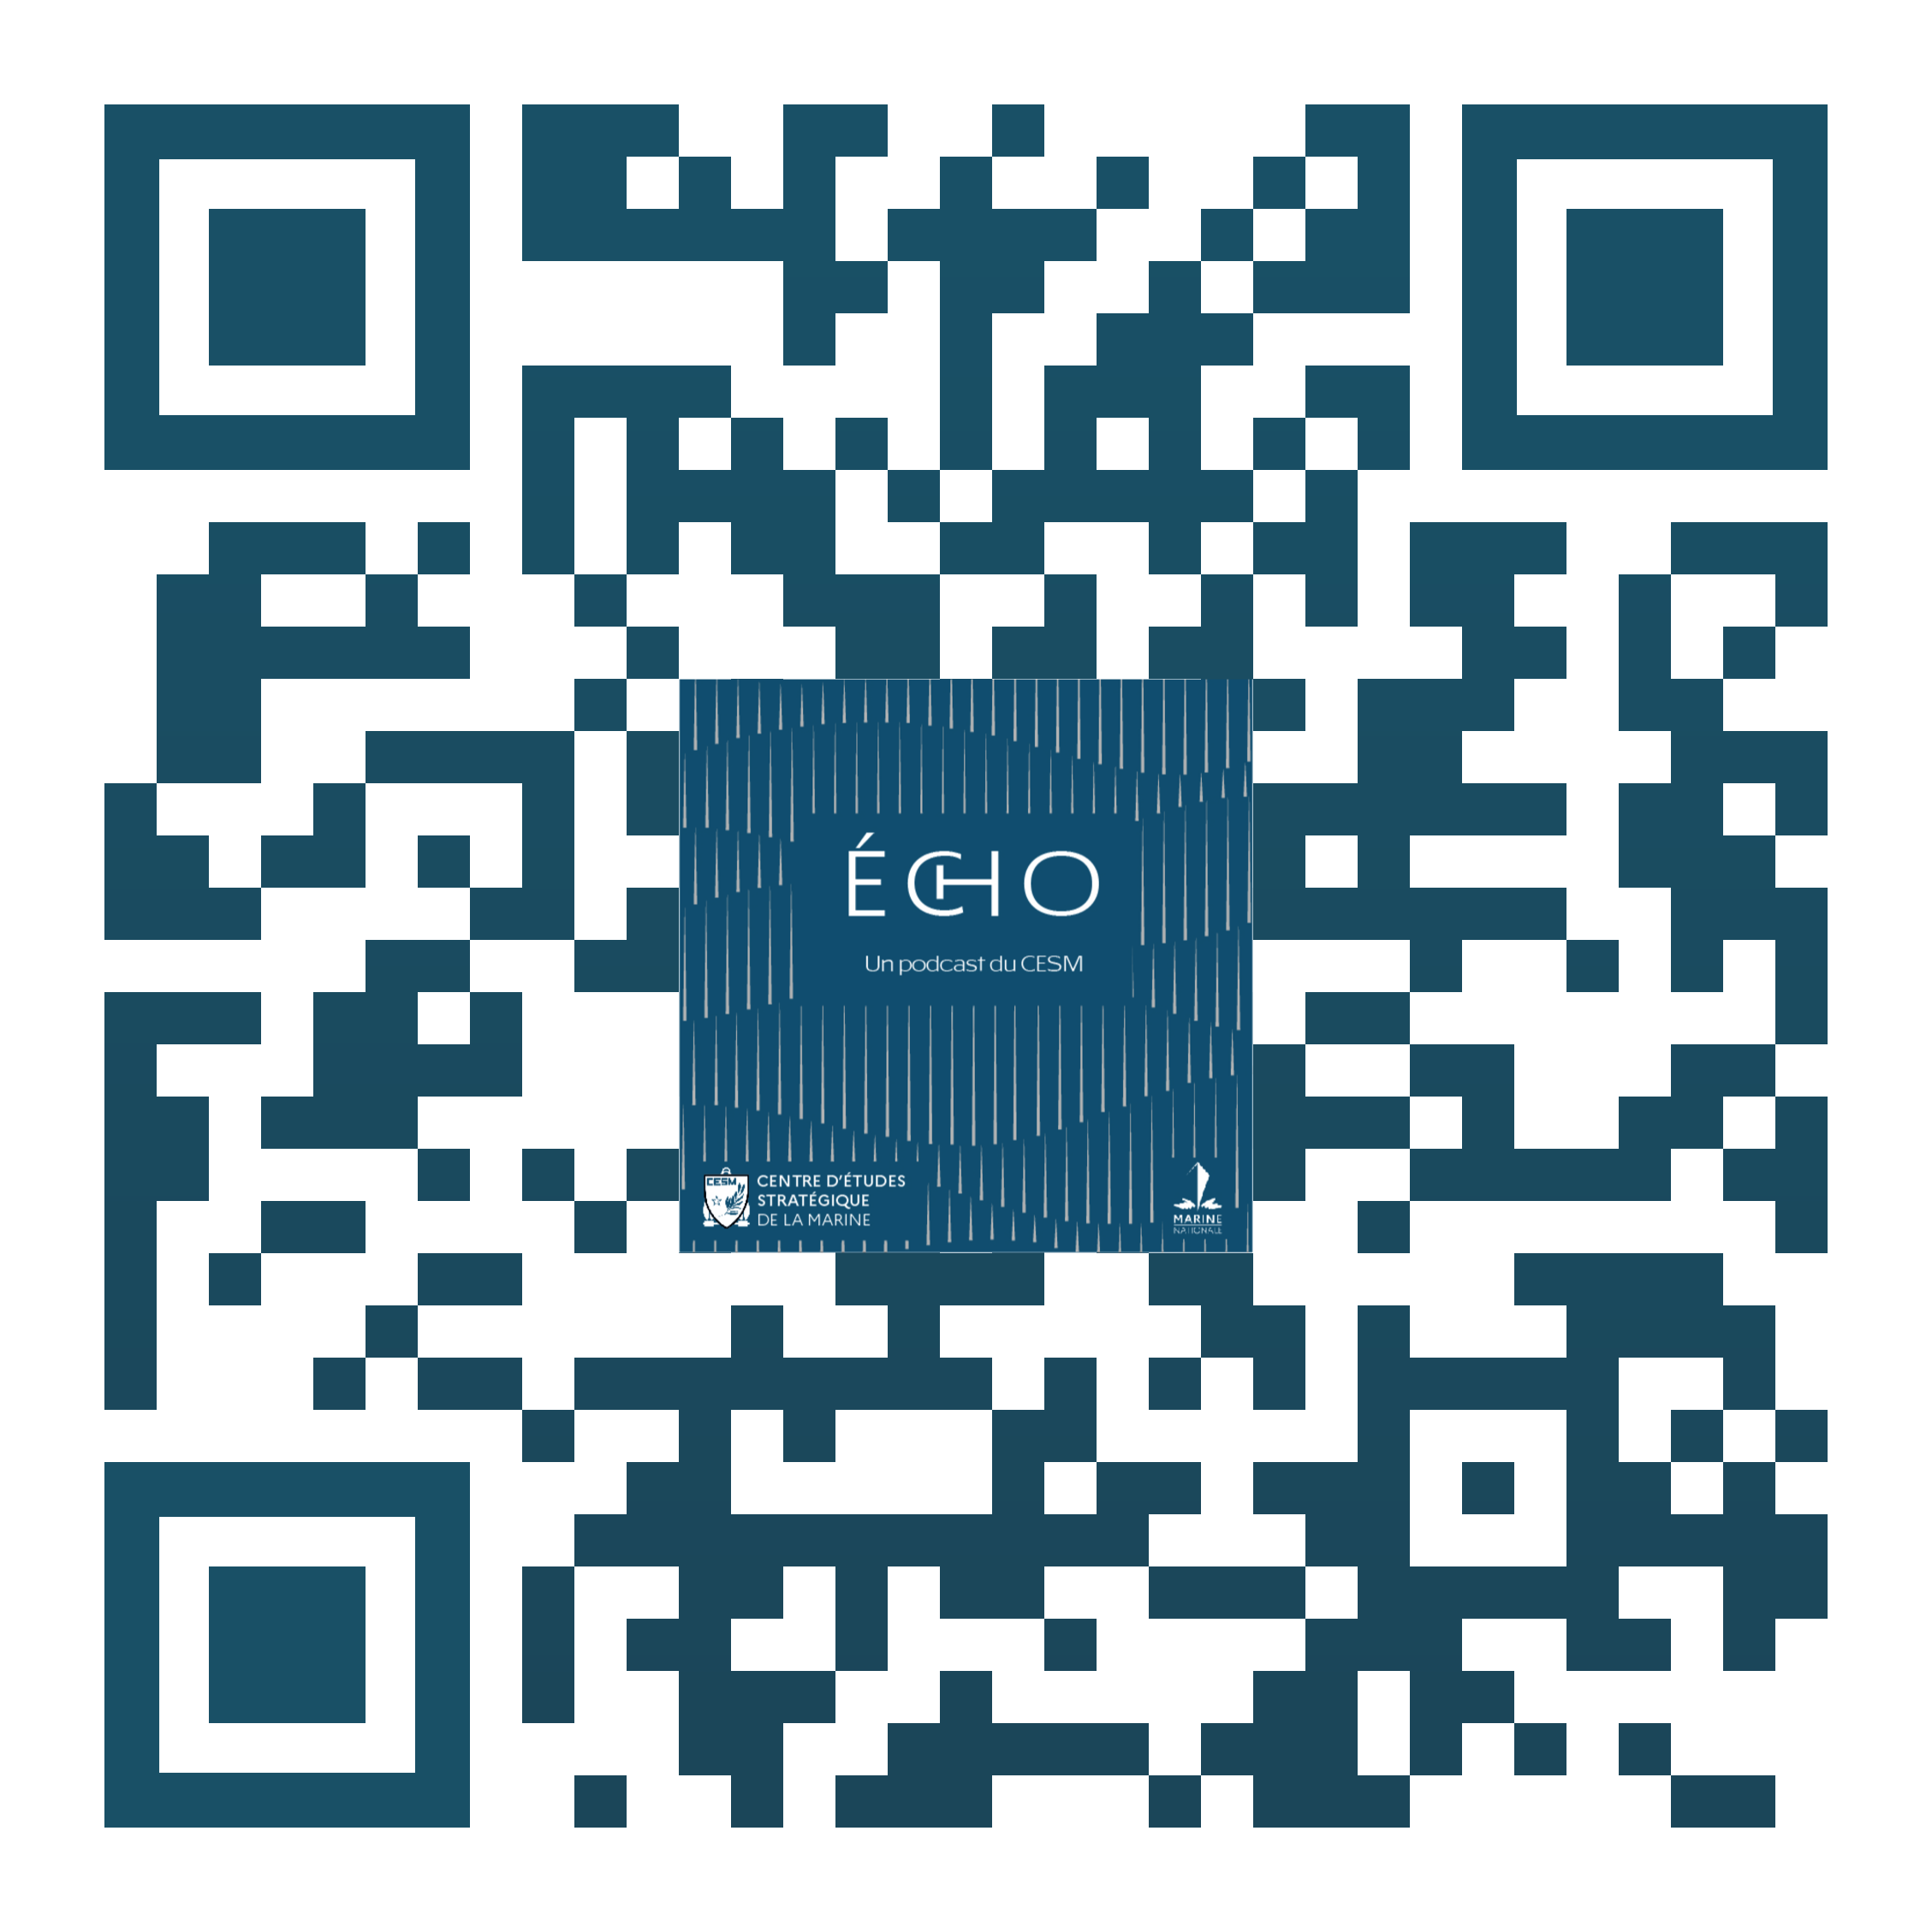 ECHO, un podcast du Centre d’Etudes Stratégiques de la Marine